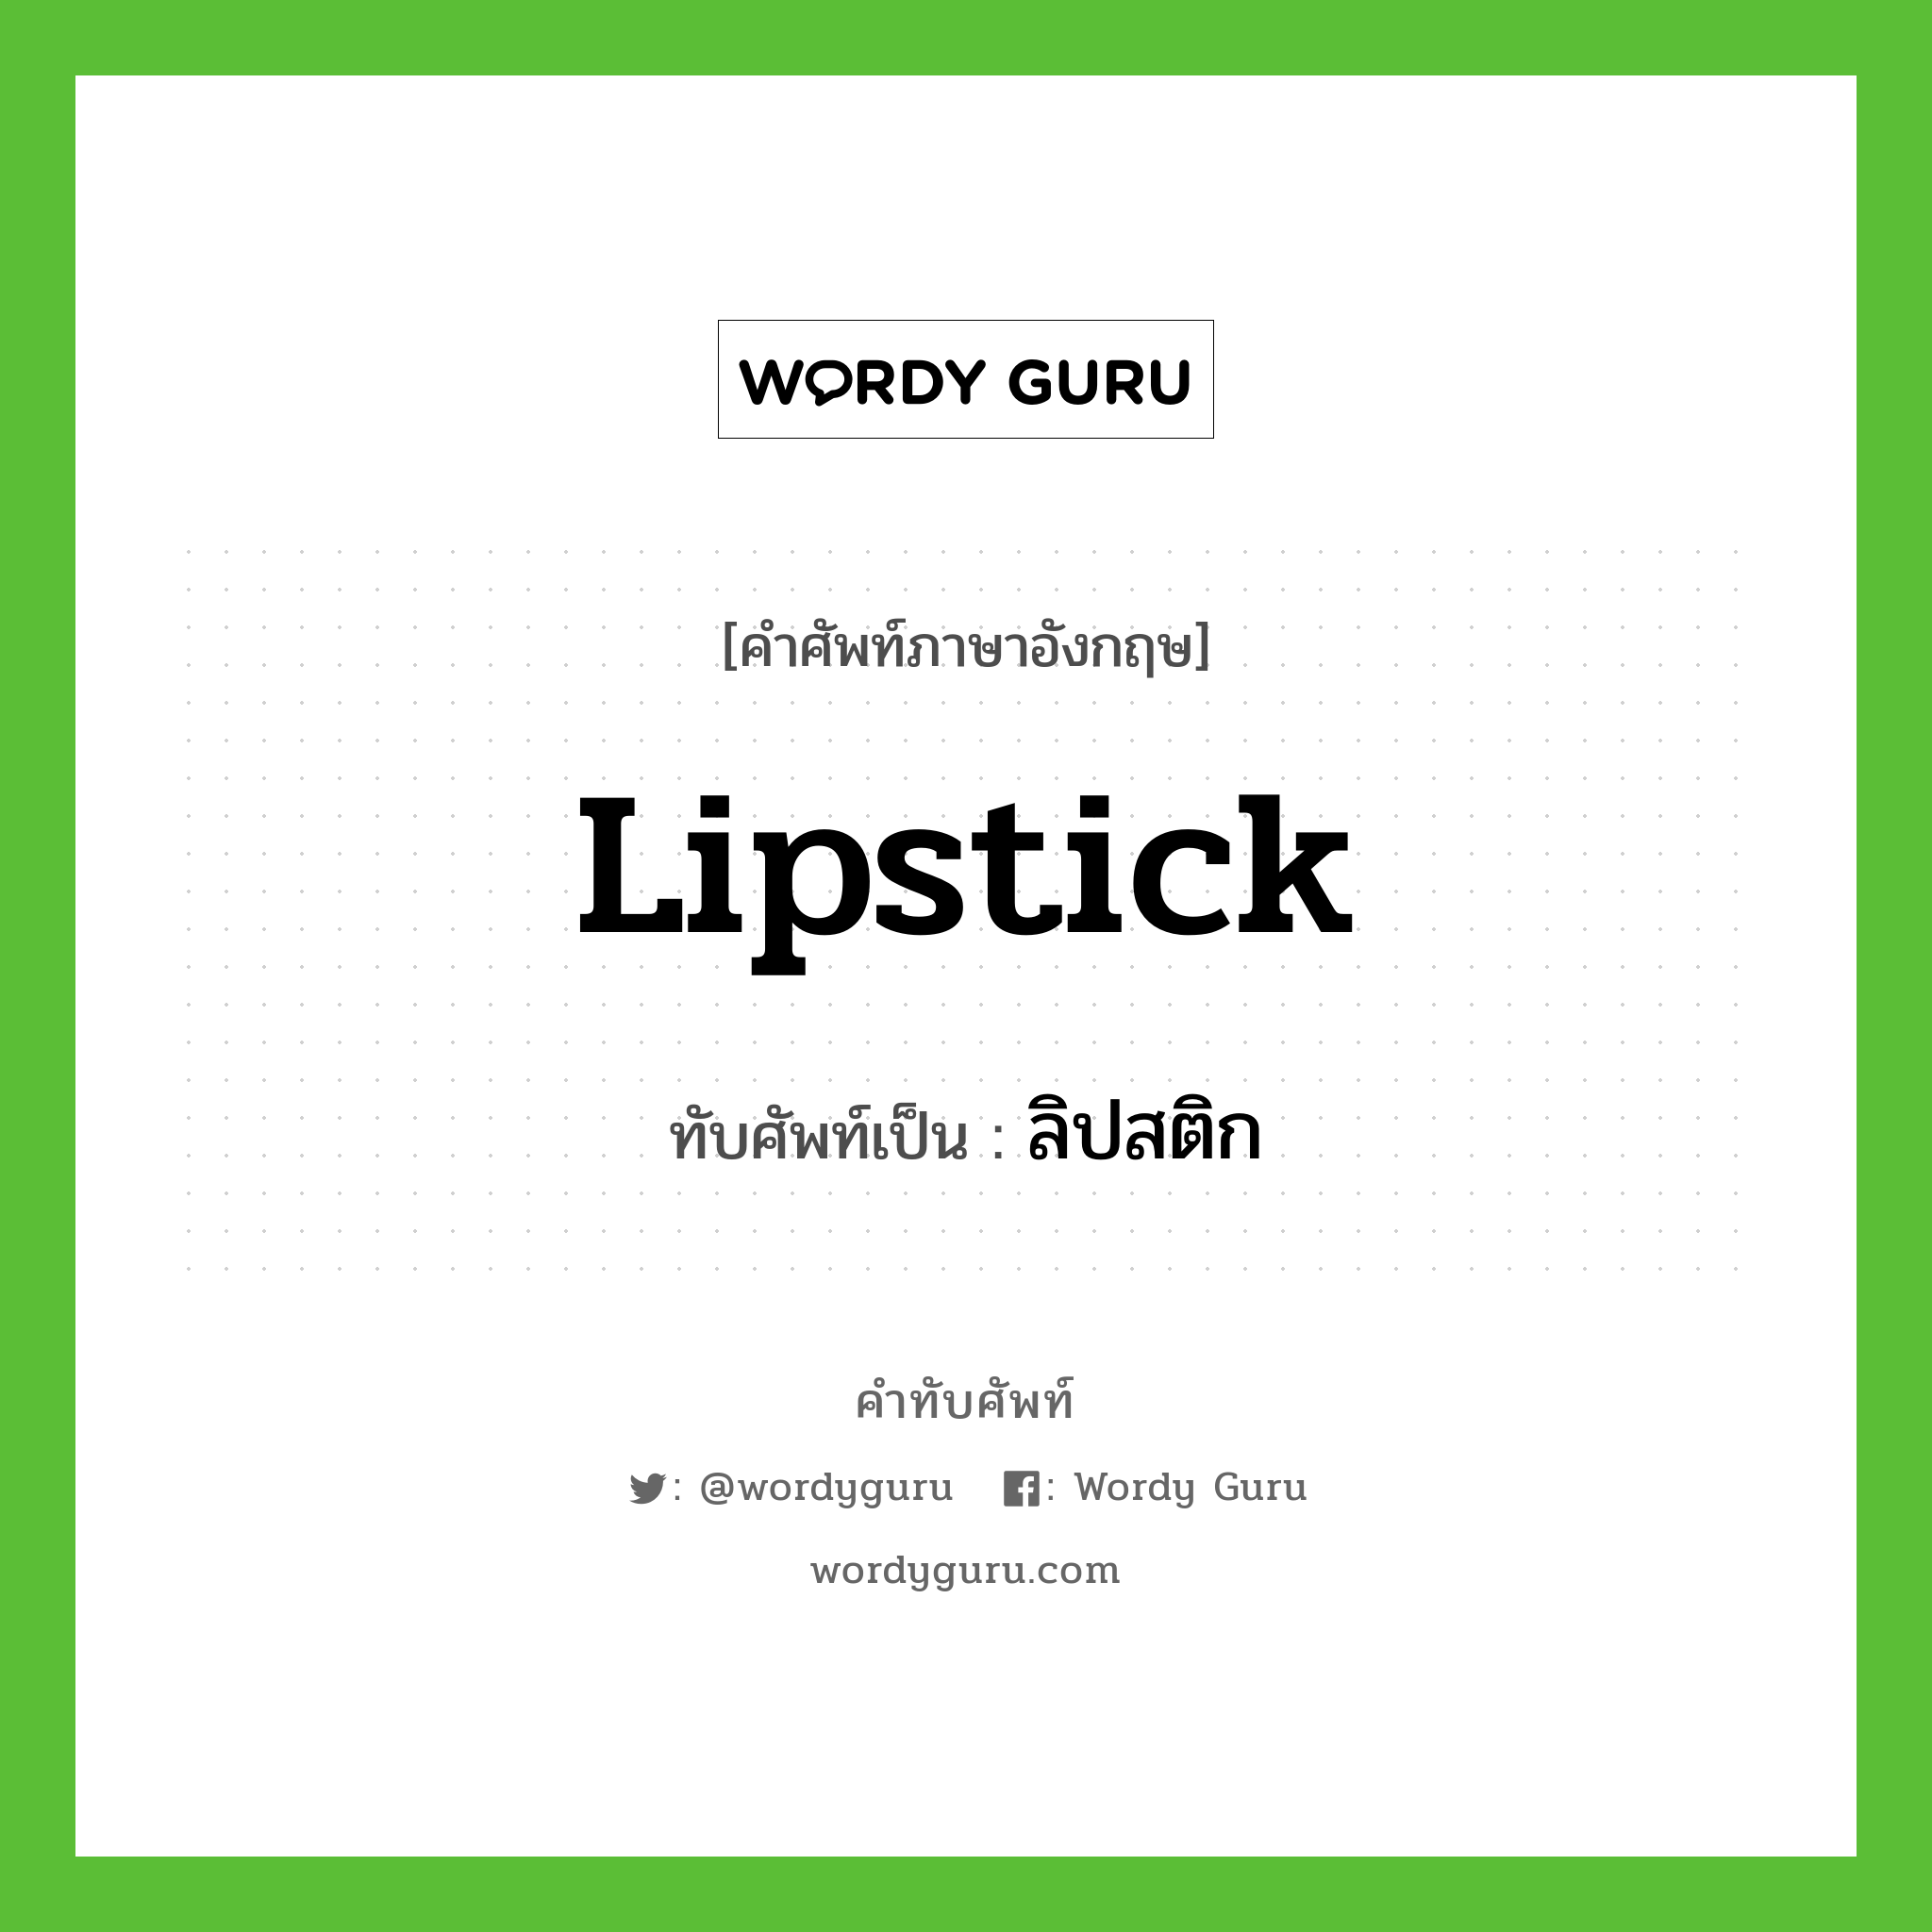 lipstick เขียนเป็นคำไทยว่าอะไร?, คำศัพท์ภาษาอังกฤษ lipstick ทับศัพท์เป็น ลิปสติก